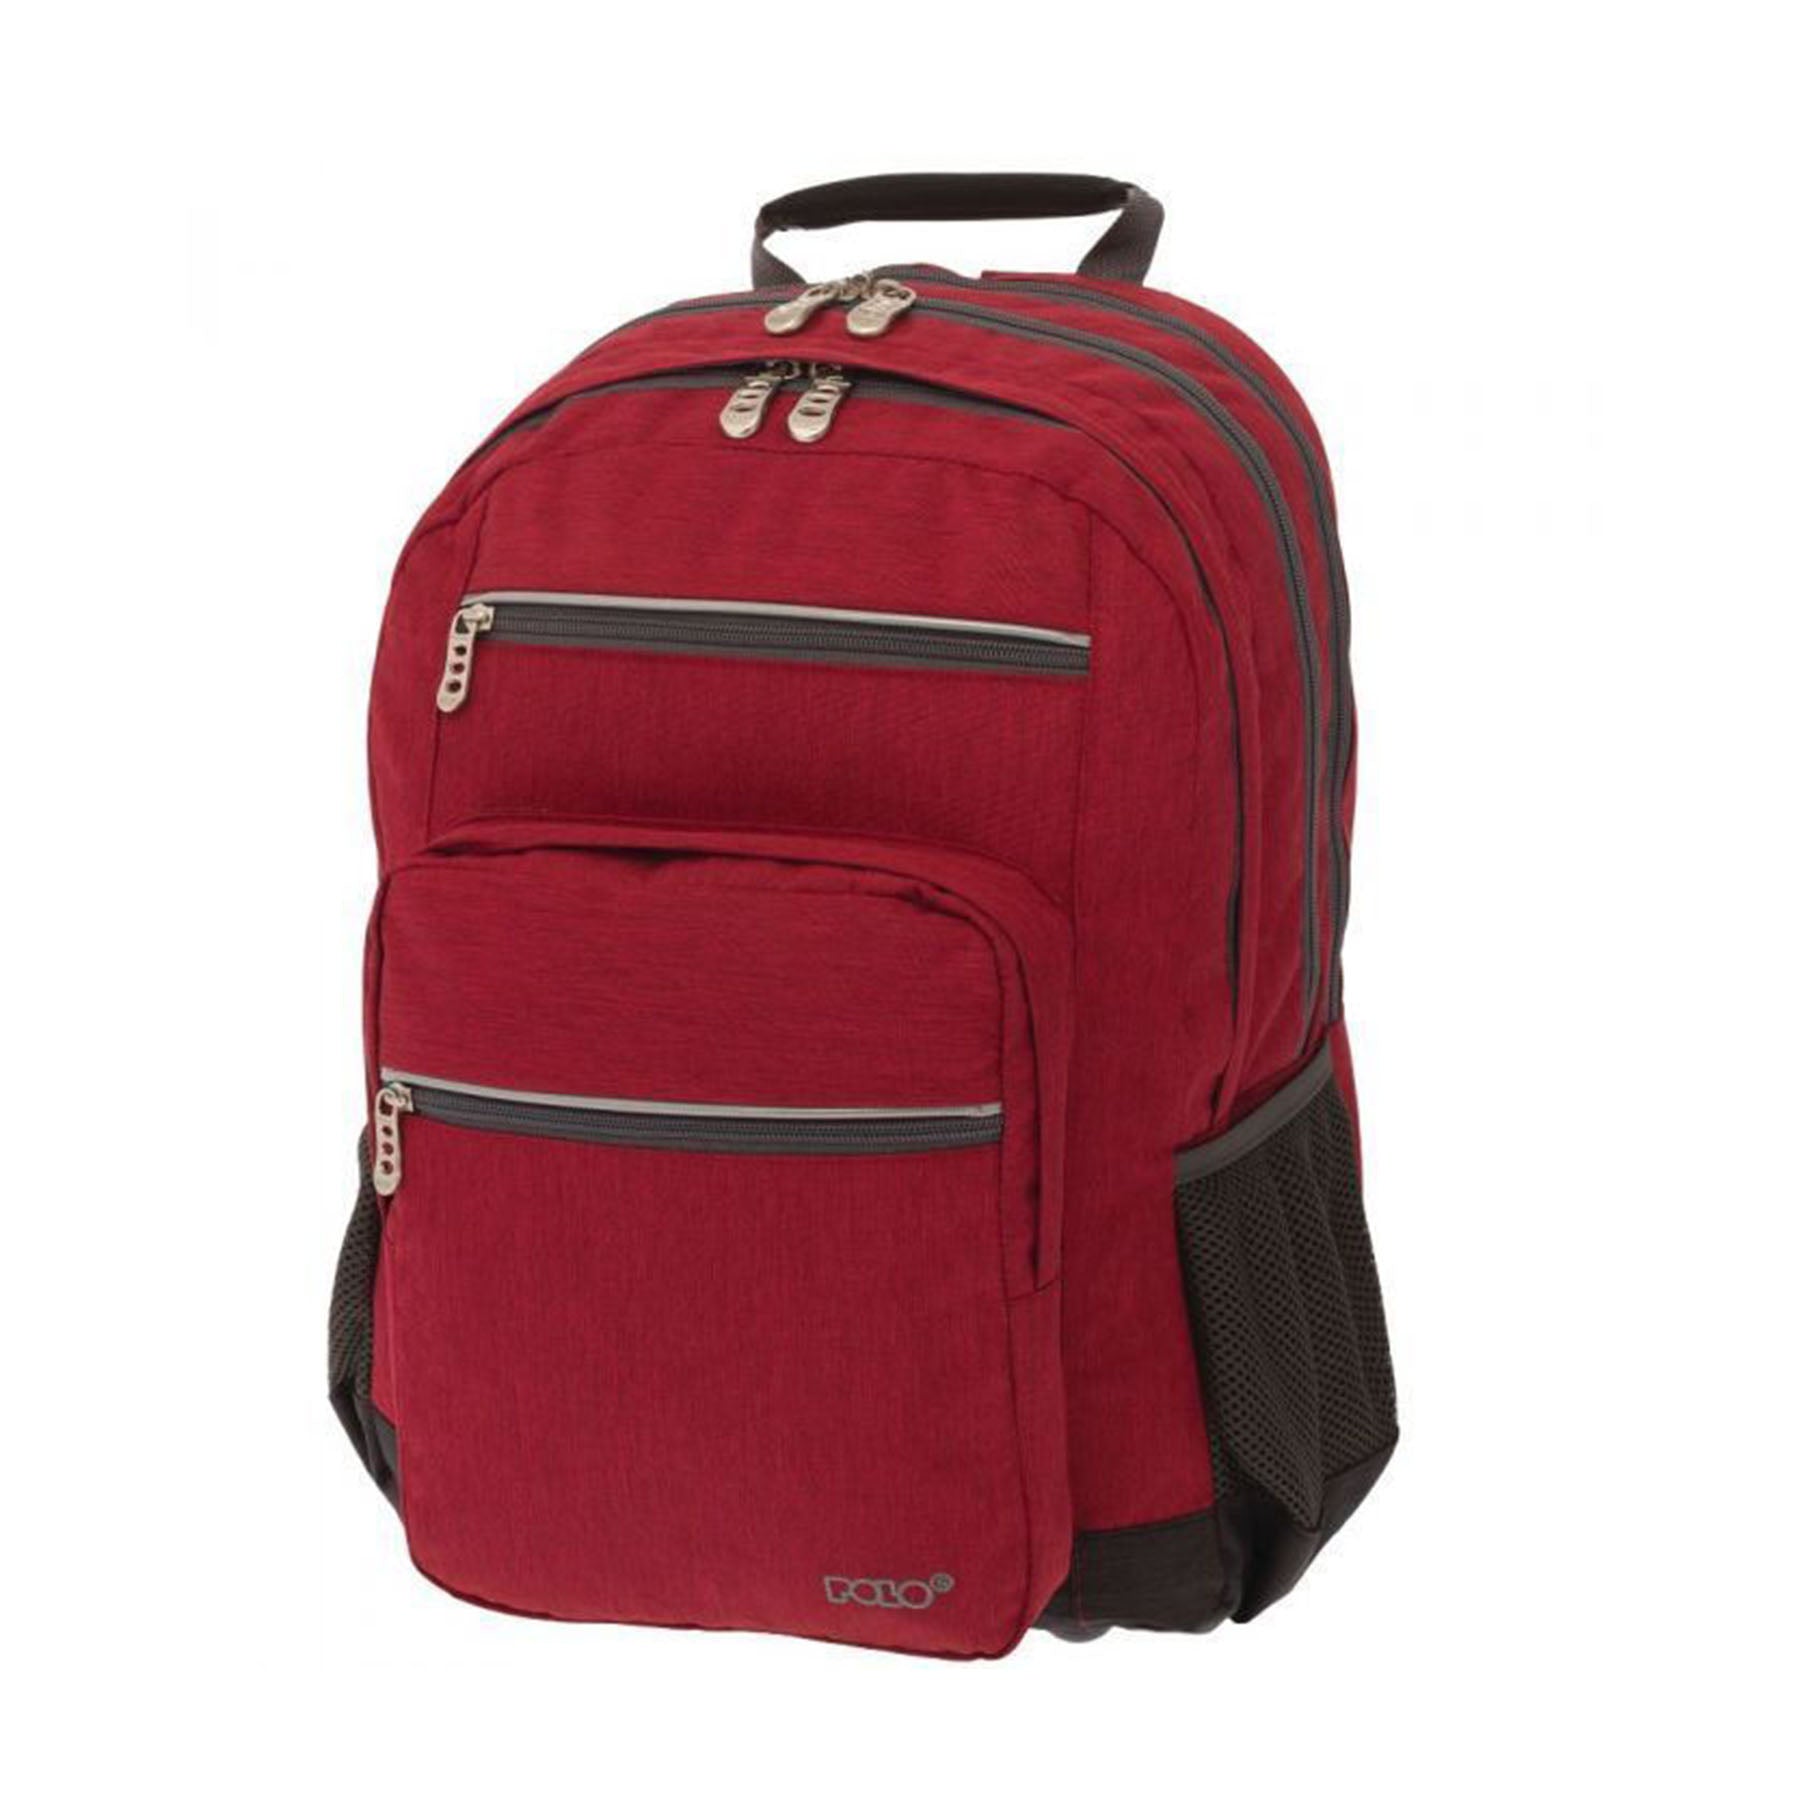 VALIBA  POLO - Surface School Bag